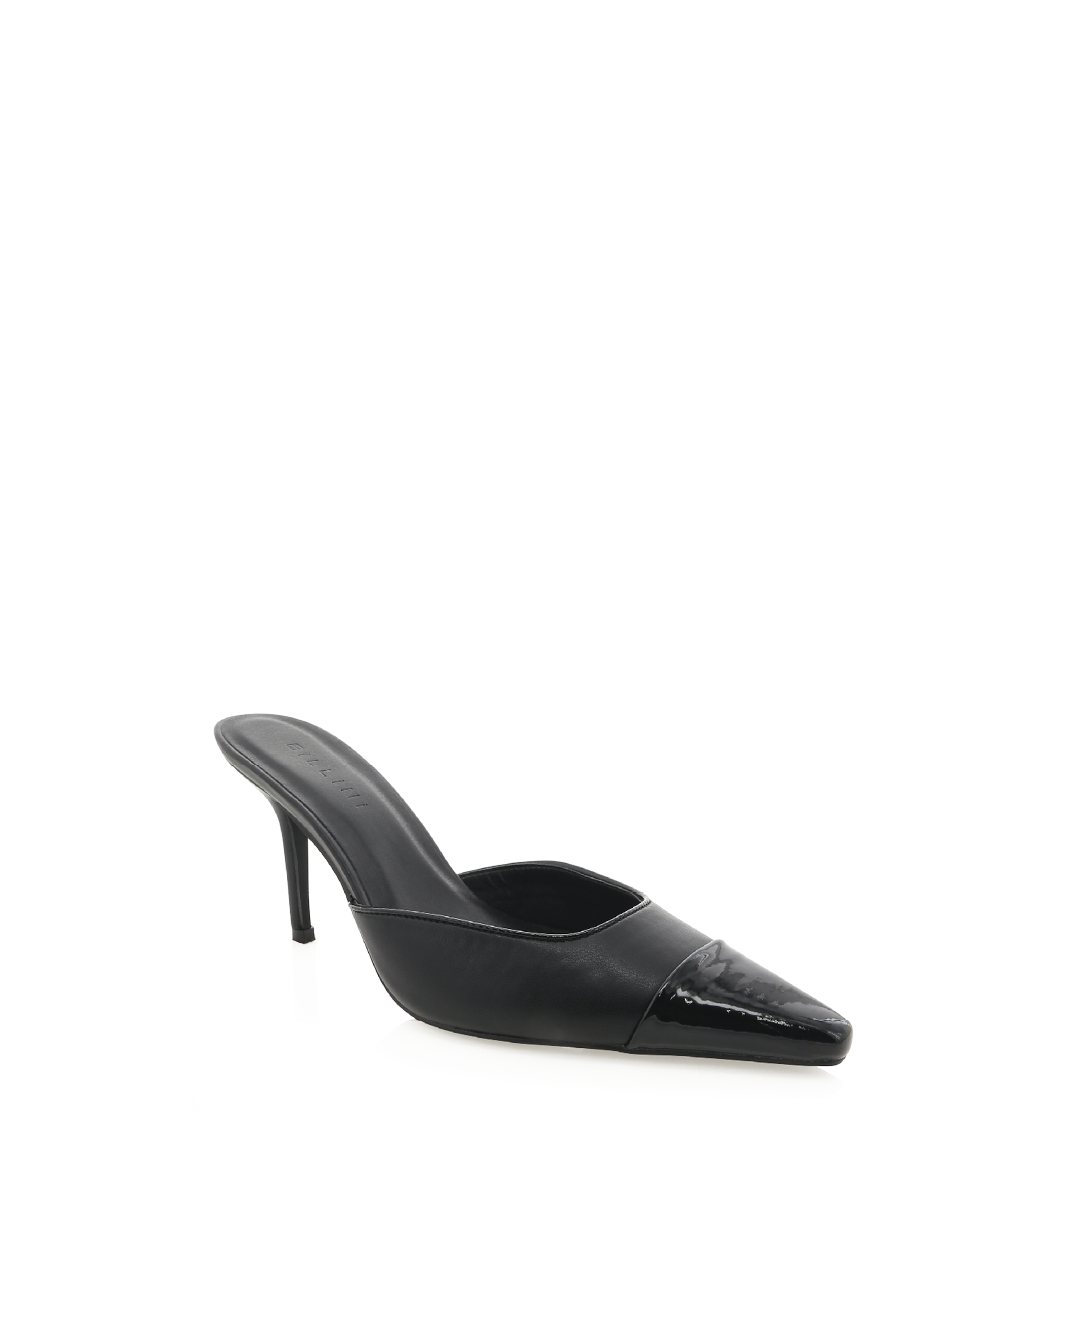 AMEARE - BLACK-BLACK PATENT-Heels-Billini-BILLINI USA